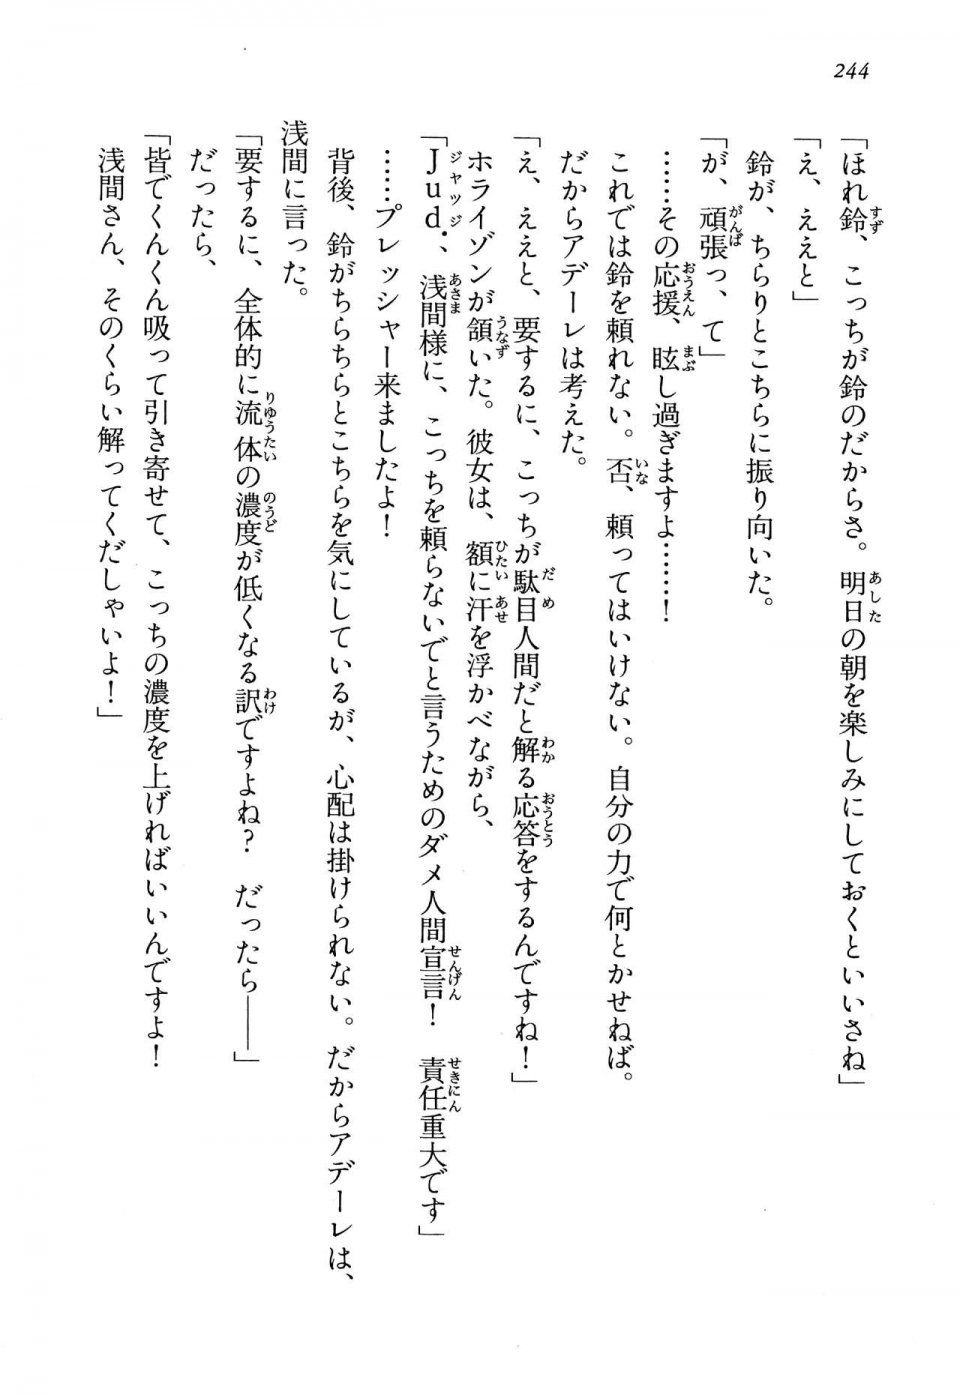 Kyoukai Senjou no Horizon LN Vol 13(6A) - Photo #244